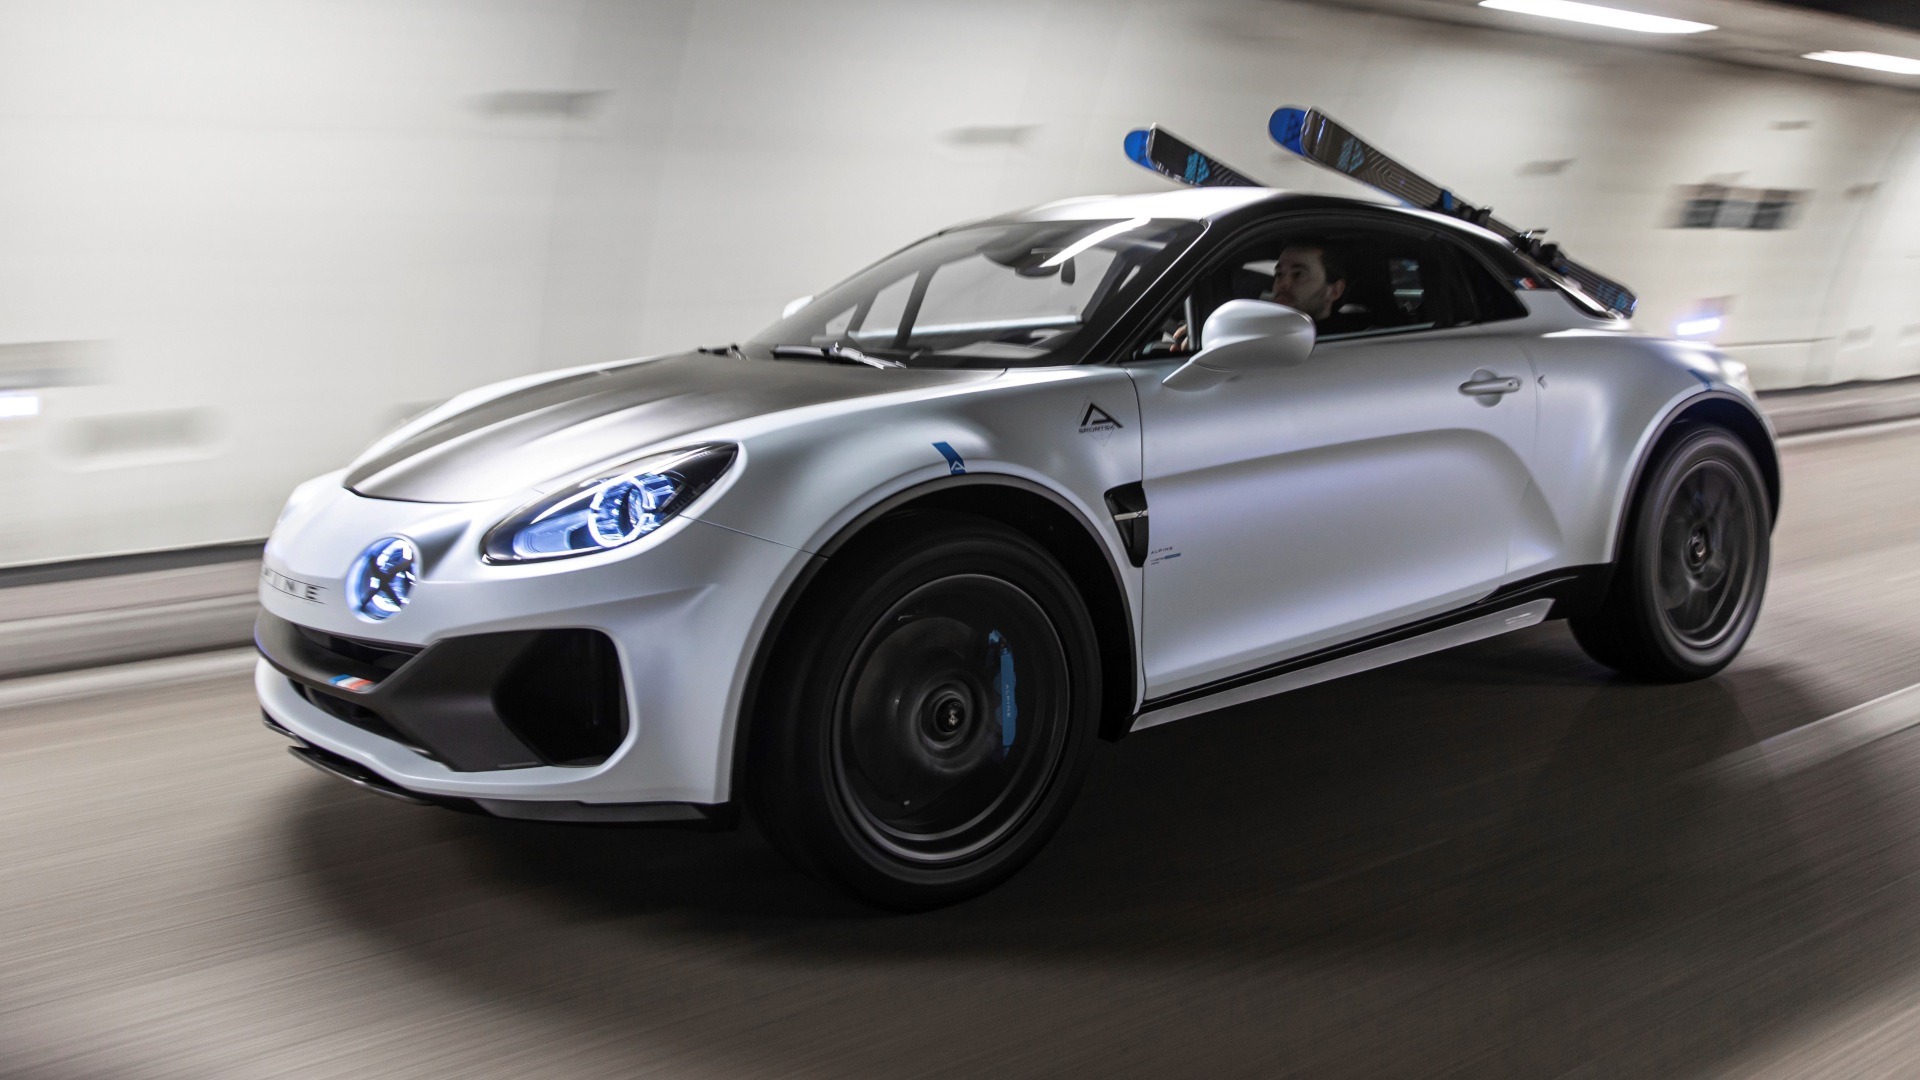 Alpine A110 SportsX Concept, sorpresa en el 35º Festival Internacional del Automóvil